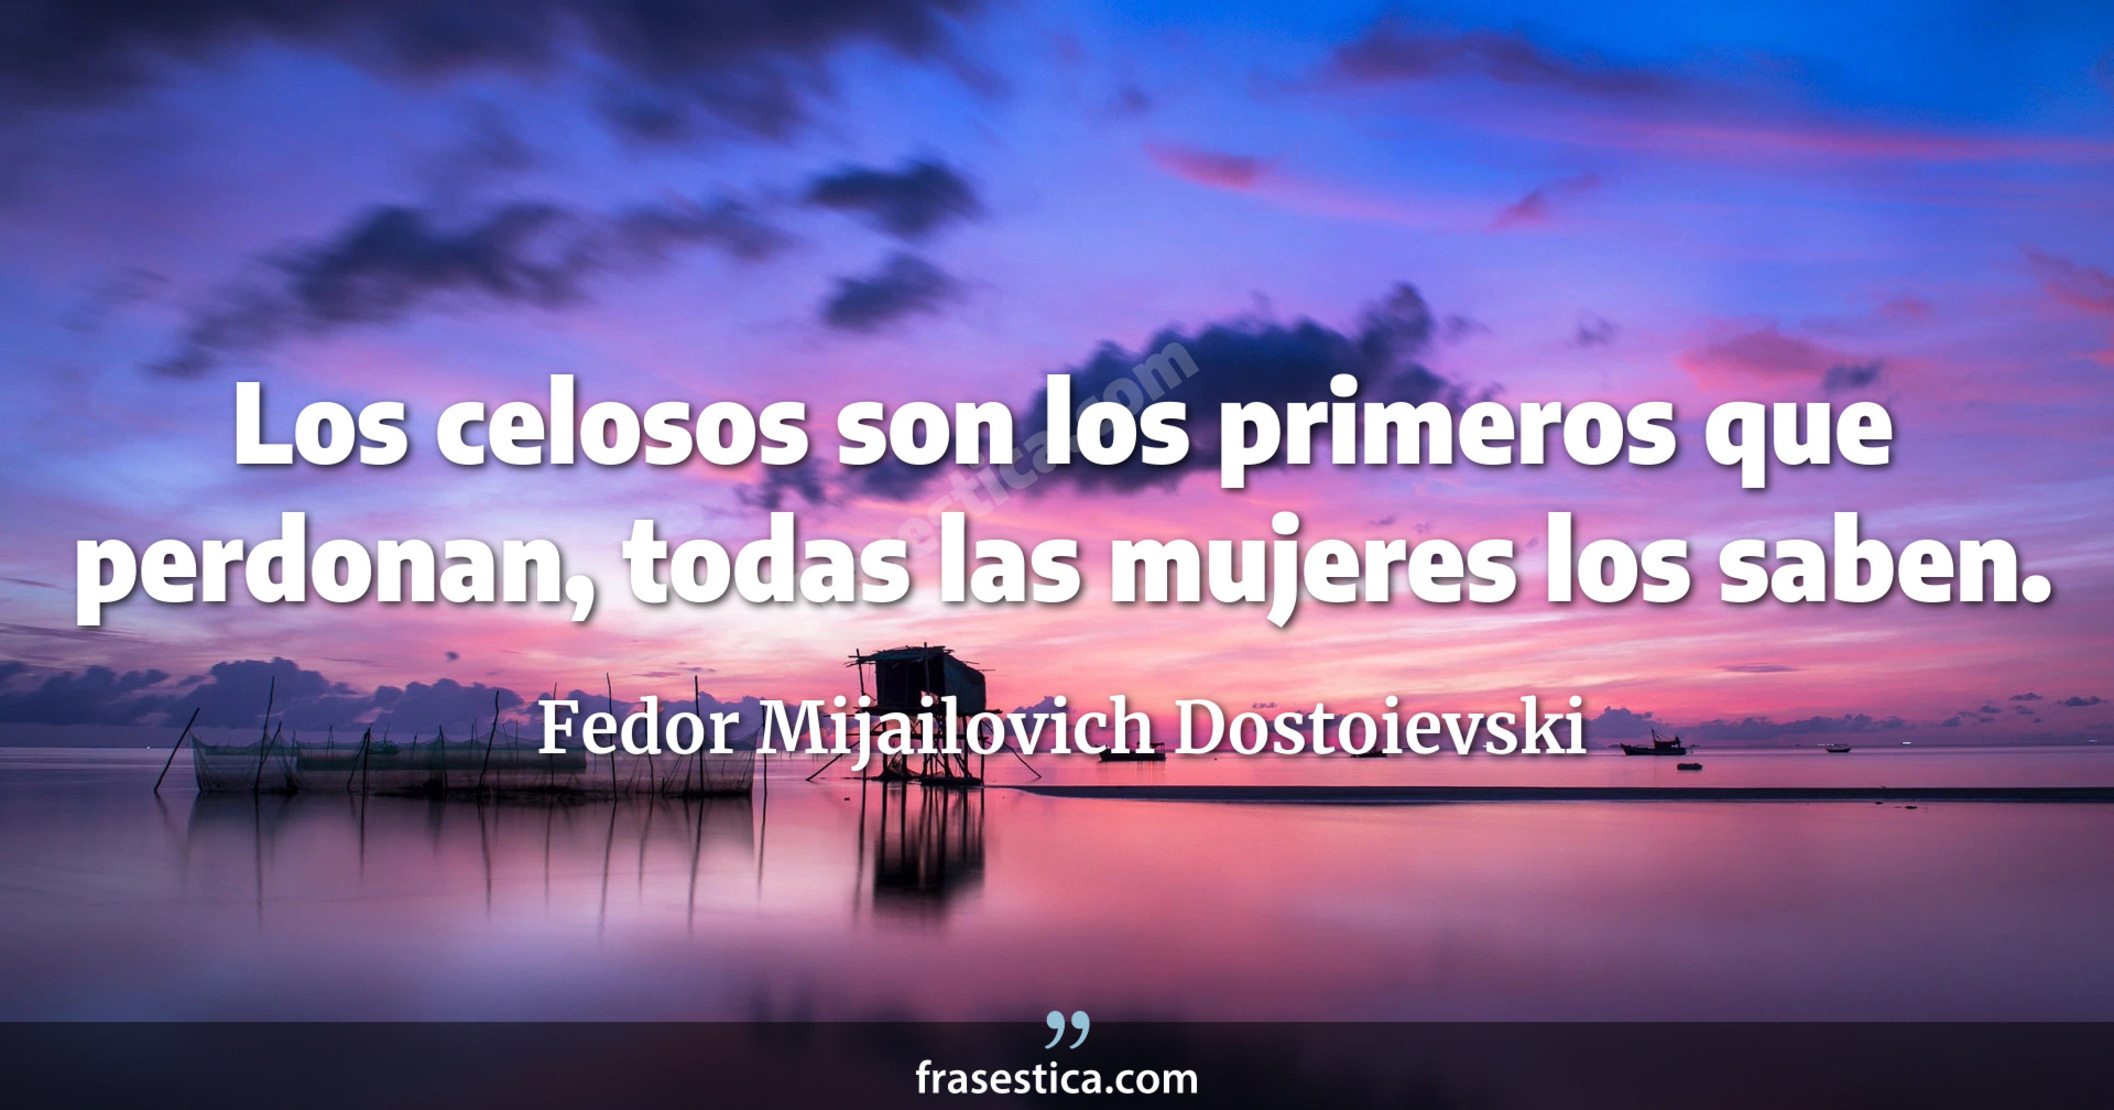 Los celosos son los primeros que perdonan, todas las mujeres los saben. - Fedor Mijailovich Dostoievski